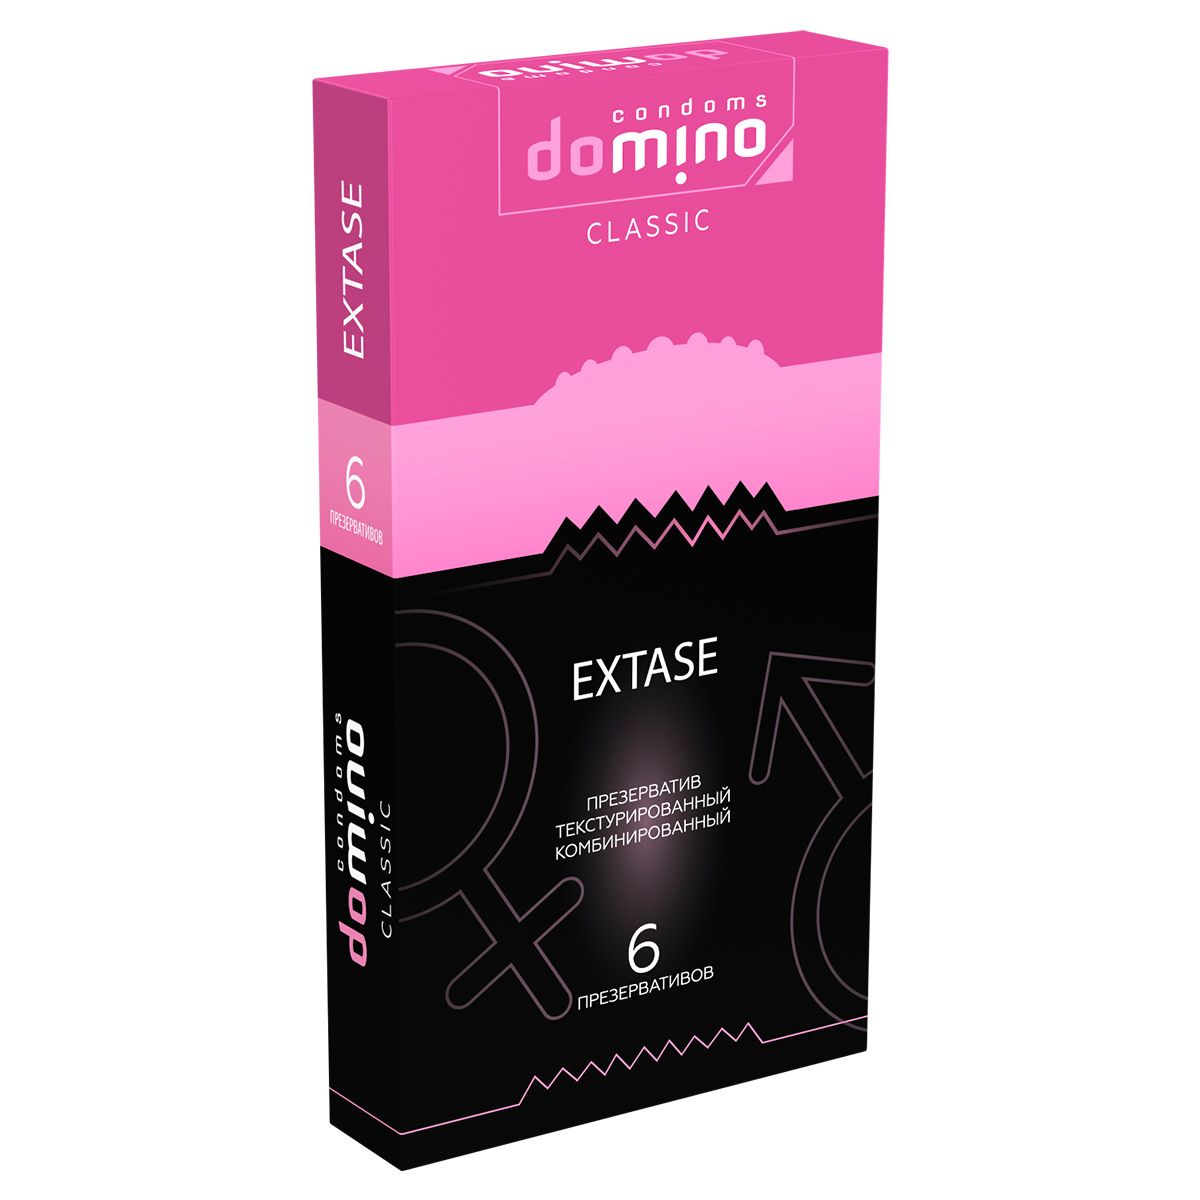      DOMINO Classic Extase - 6 .